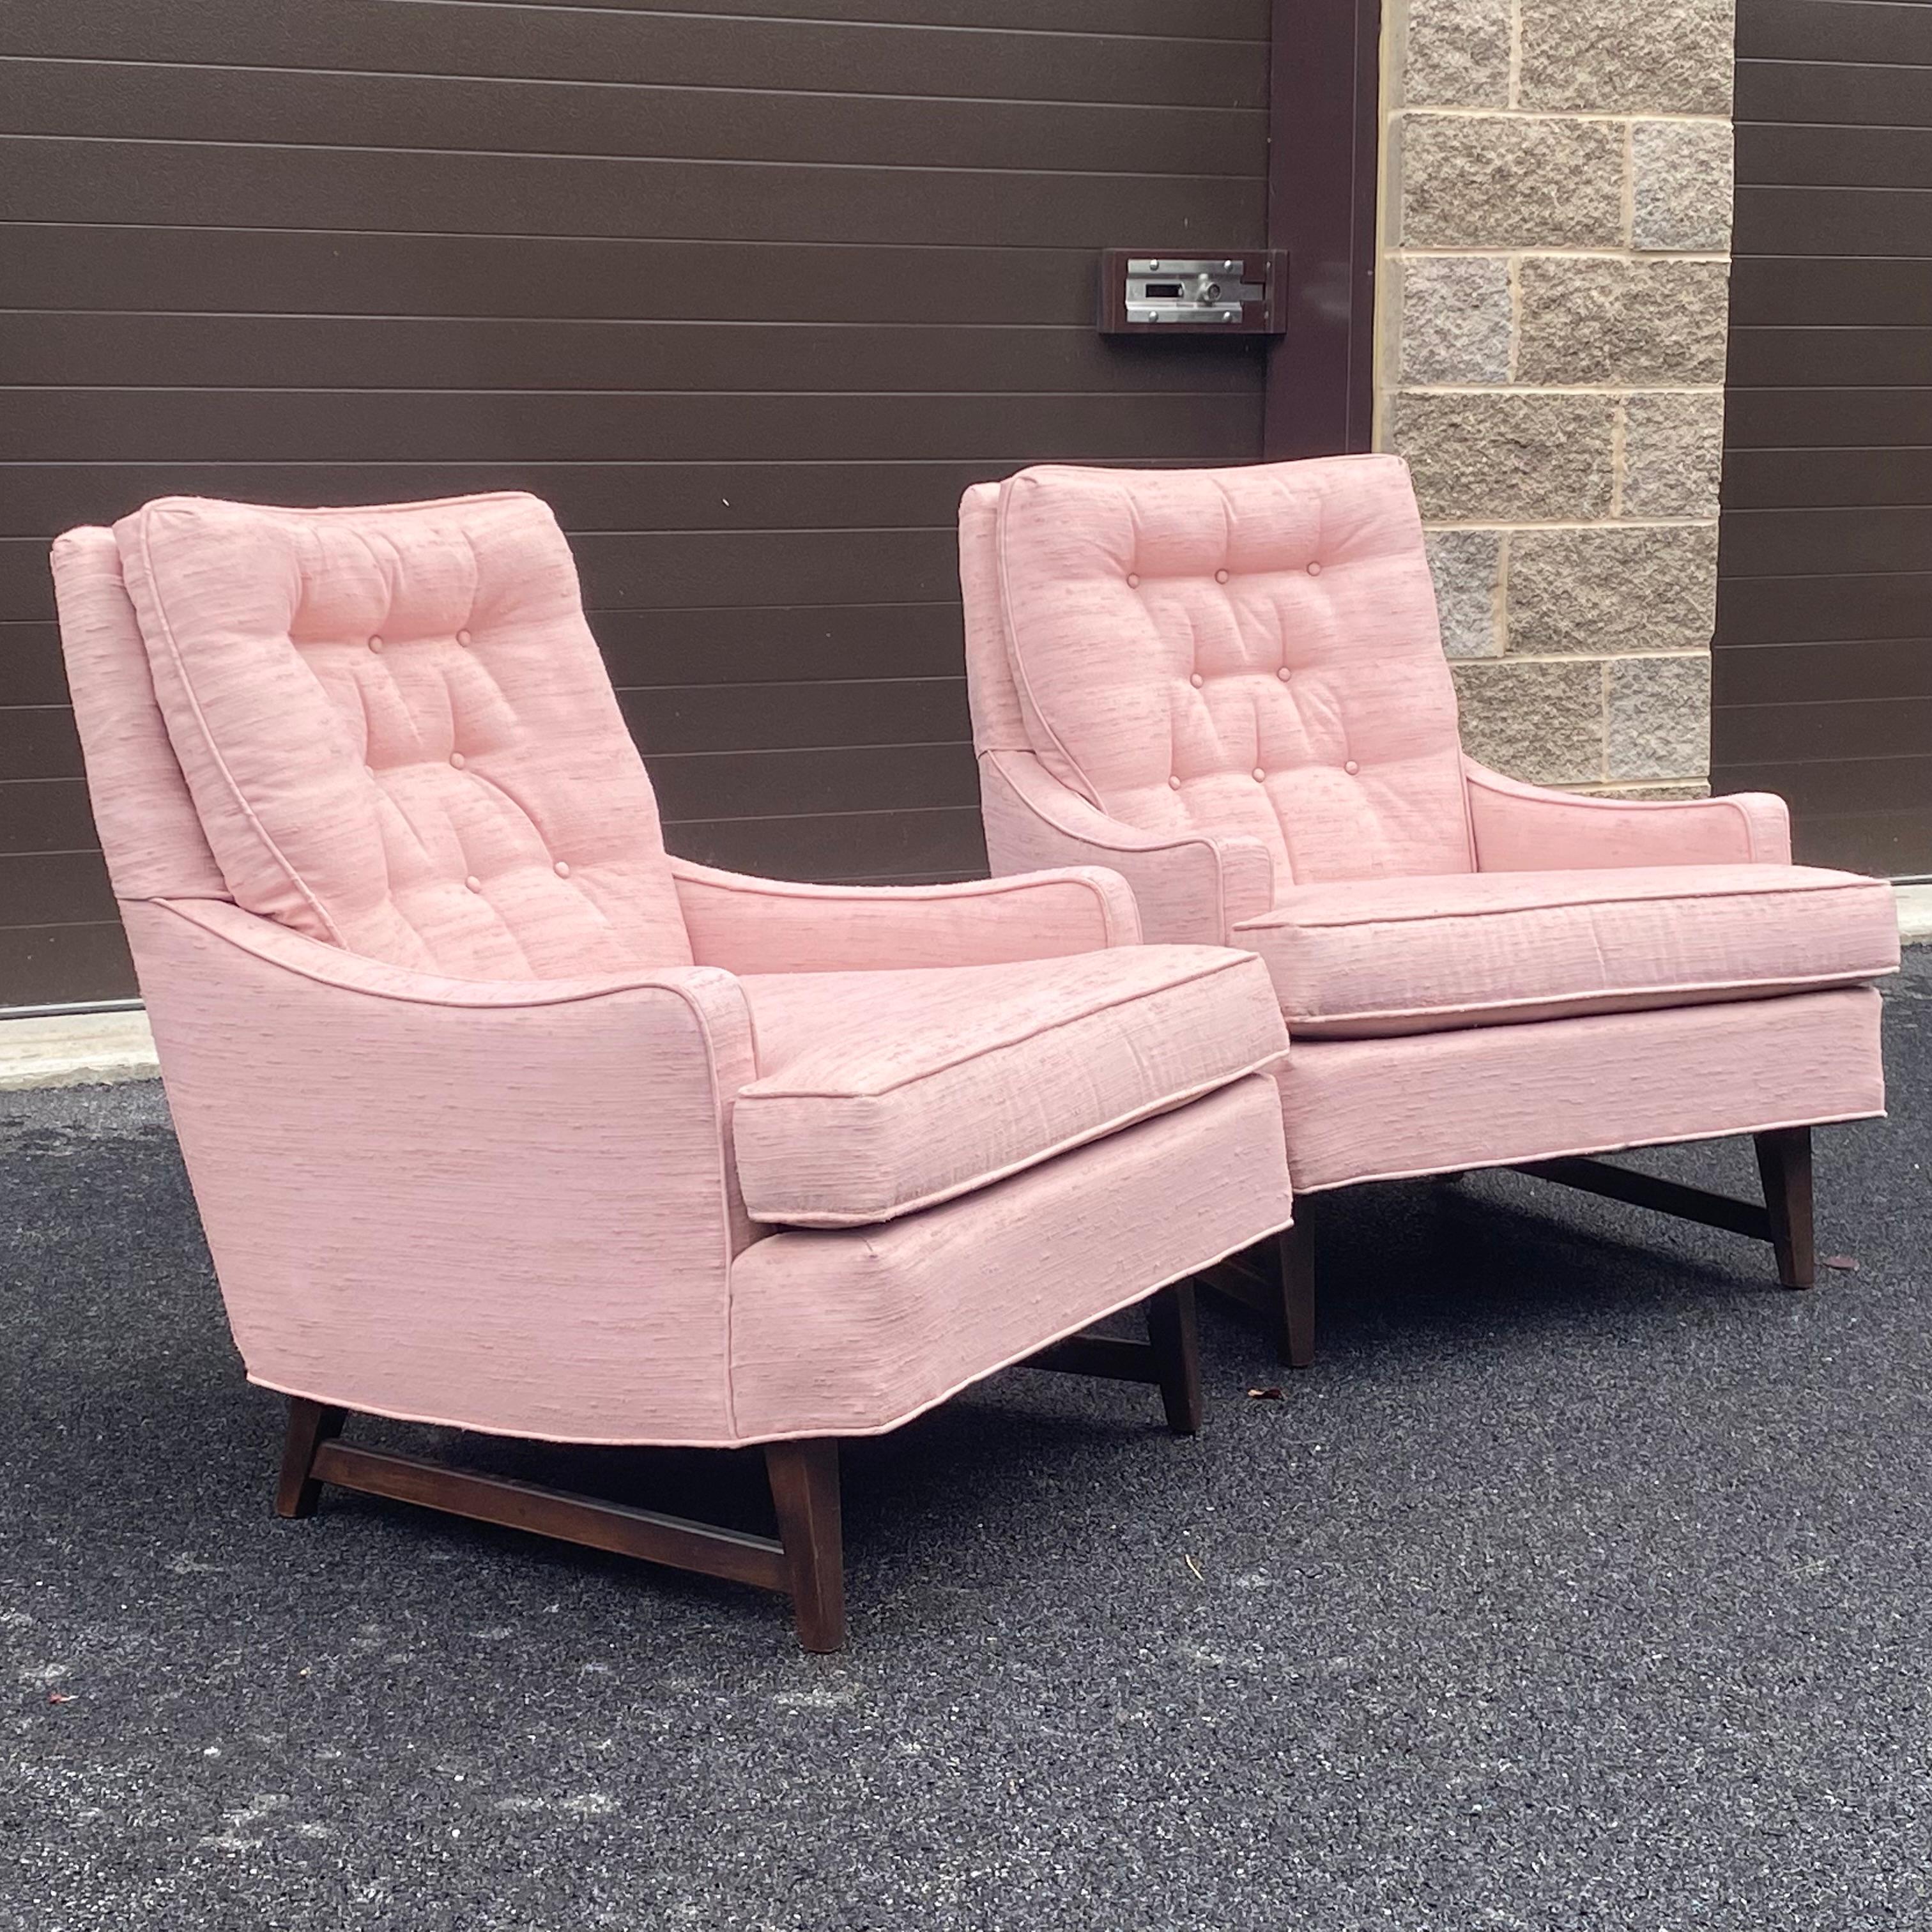 Paire de chaises de salon modernes du milieu du siècle, avec dossier à boutons, tapissées de rose nubby, sur une base à pieds coniques carrés en noyer avec des brancards. Super propre et prêt à être placé ! 